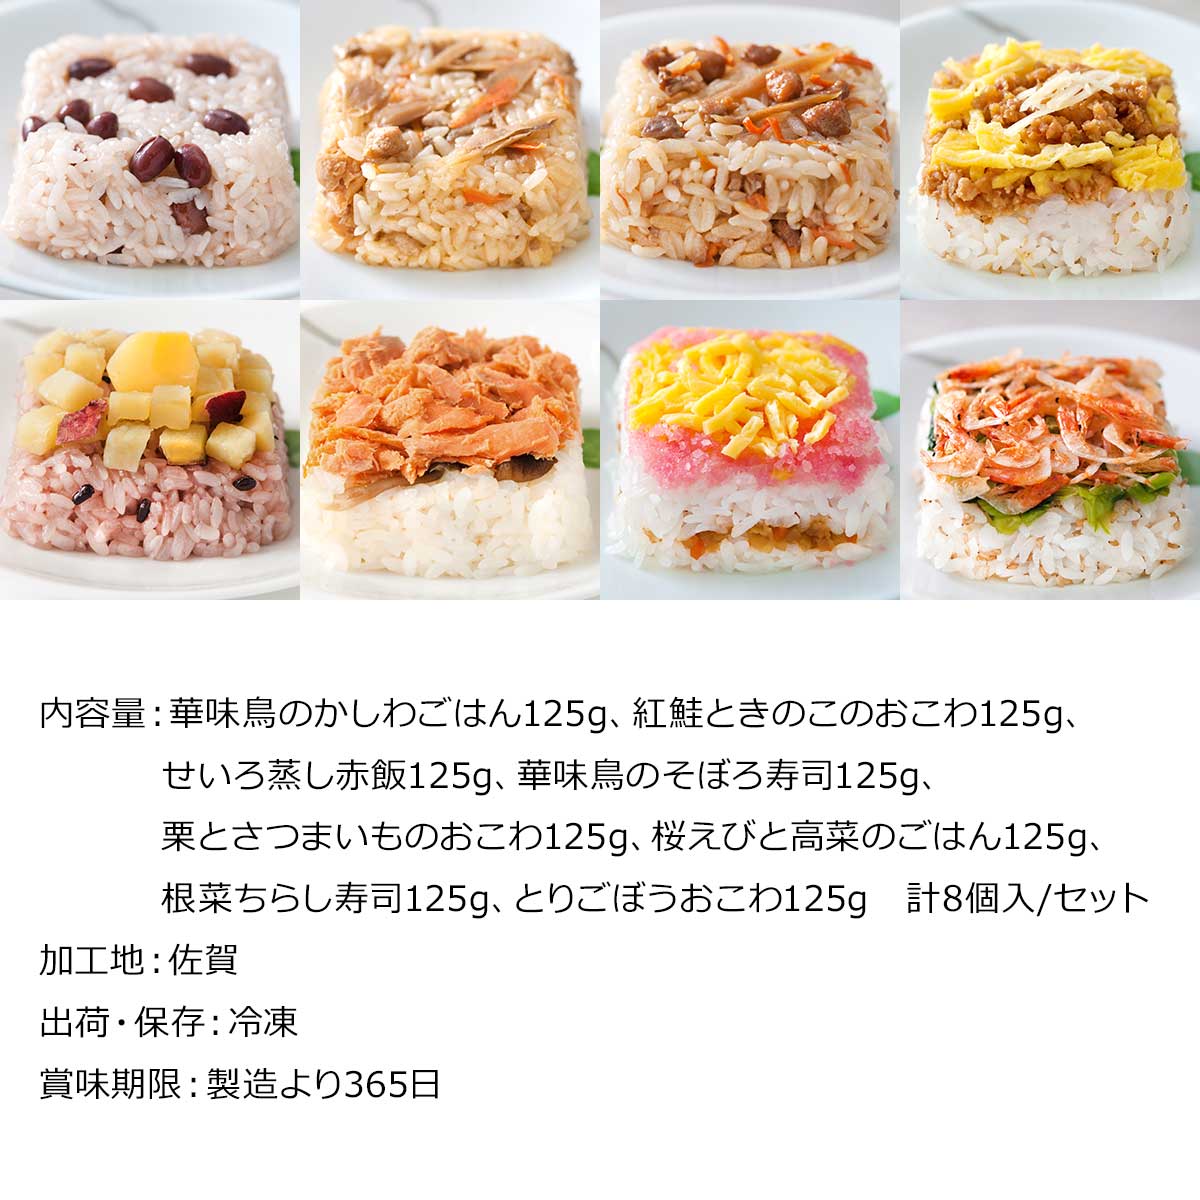 唐房米穀 彩りごはん8食セット【PDF】
